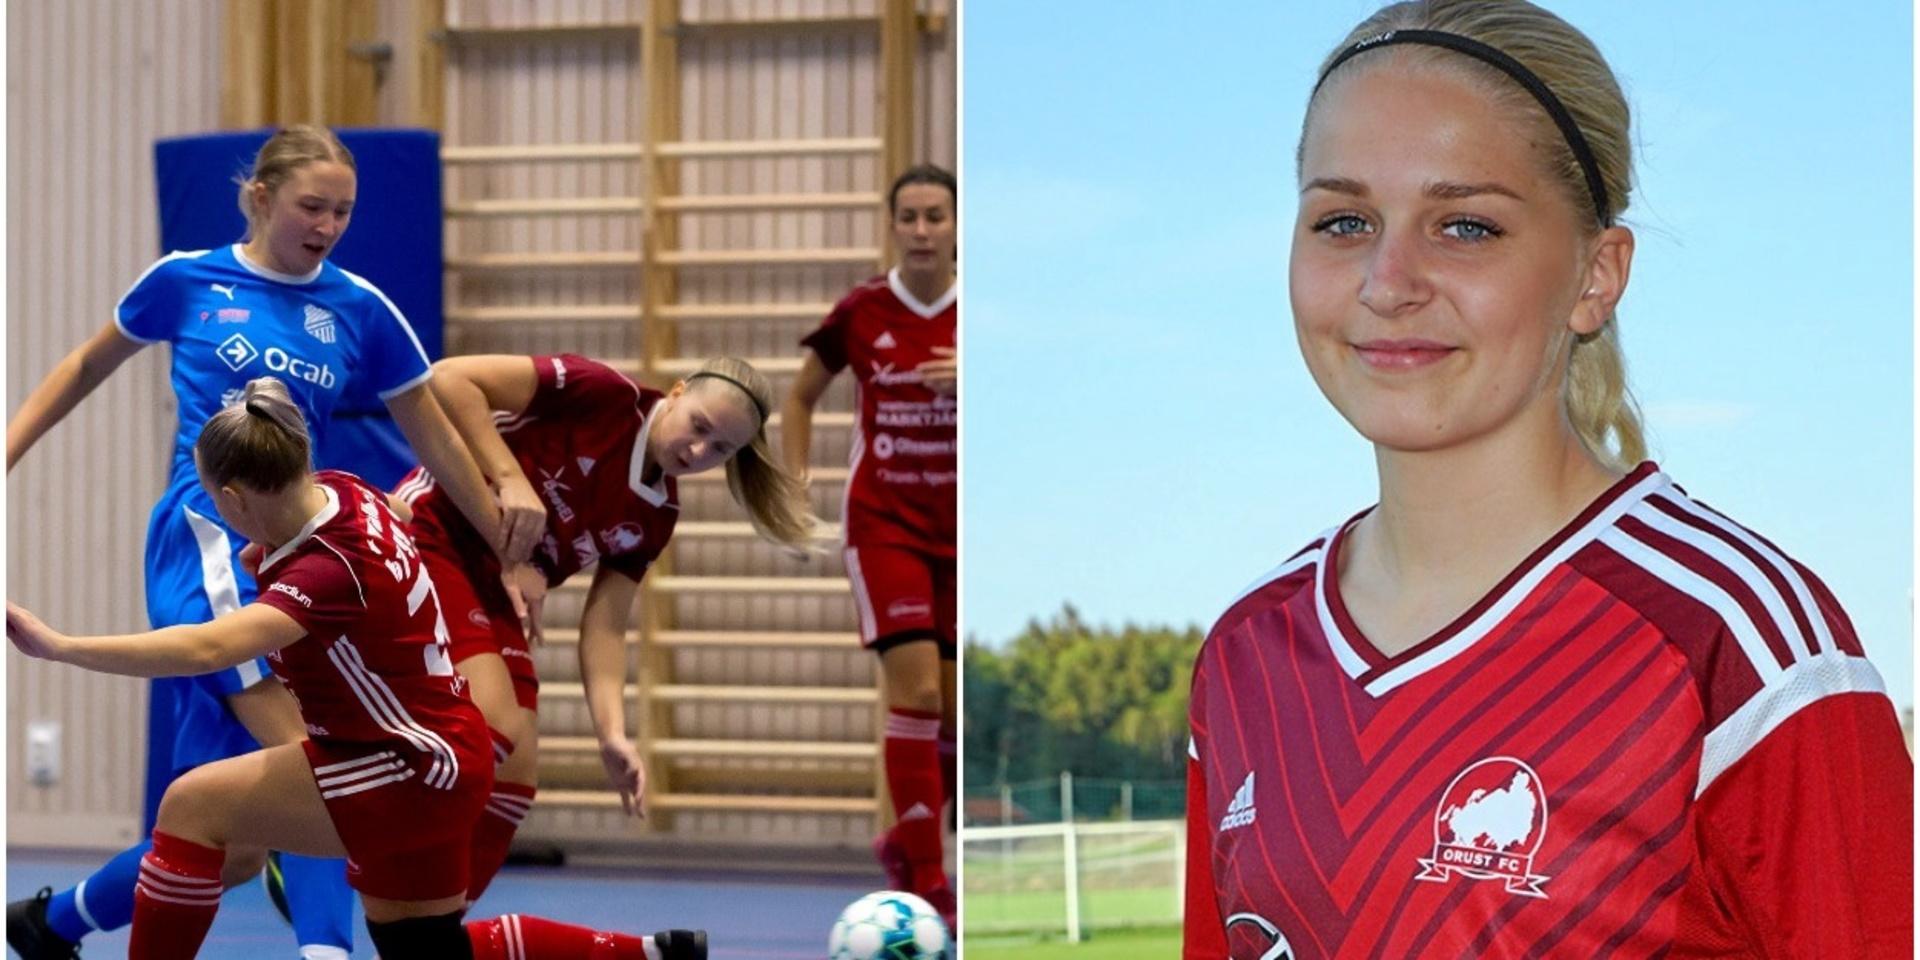 Den 23-åriga Maja Blanck är fotbollsspelare i Orust FC och sitter med i föreningens styrelse. Hon är också futsalansvarig och arbetar med att forma en trupp för den kommande säsongen i RFL som är den högsta ligan i futsal för damer.